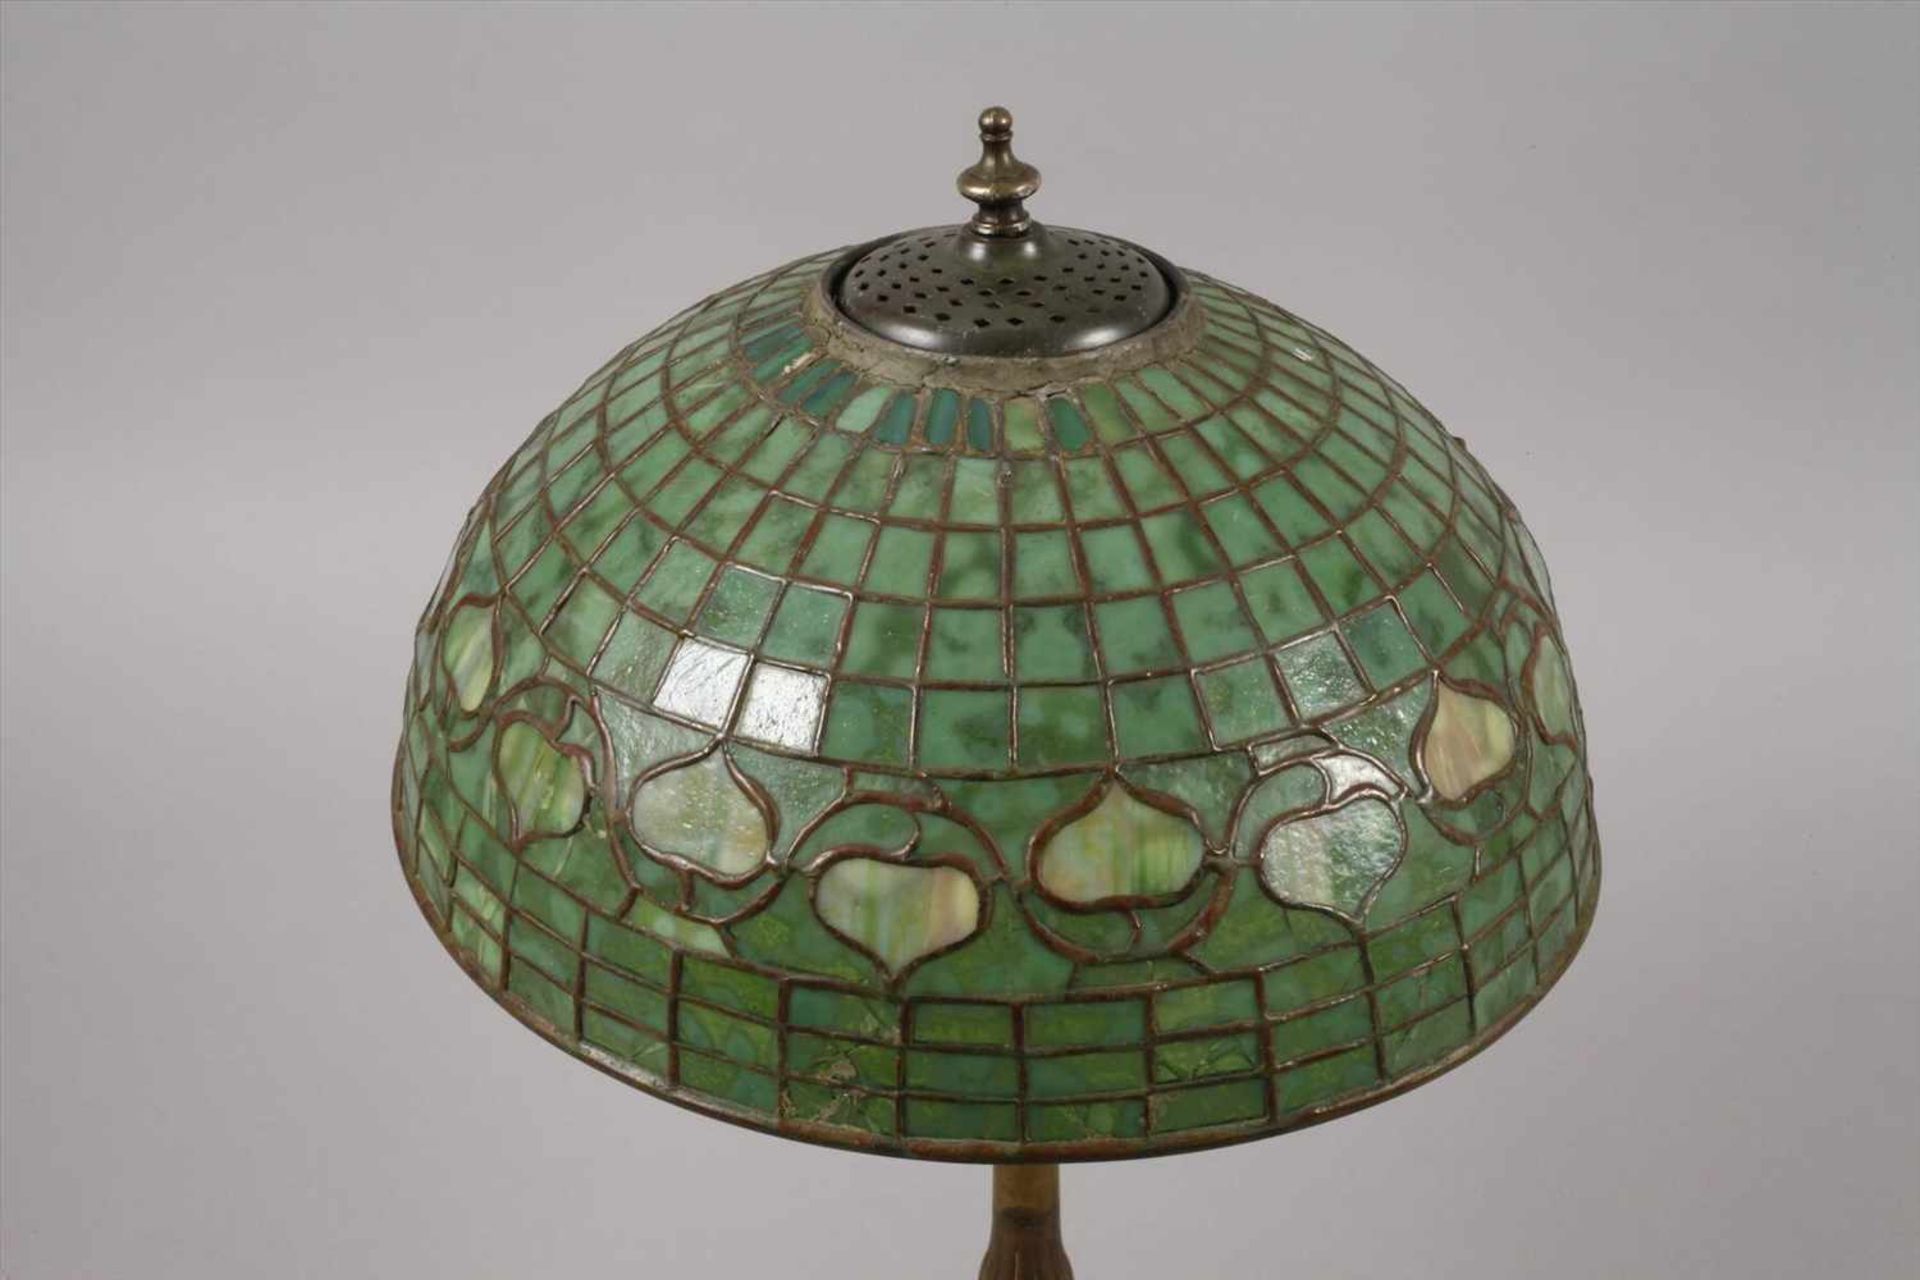 Tischlampe USA um 1910, ungemarkt, Pilzförmiger Schirm aus grün marmoriertem Bleiglas, Bronzefuß - Bild 3 aus 6